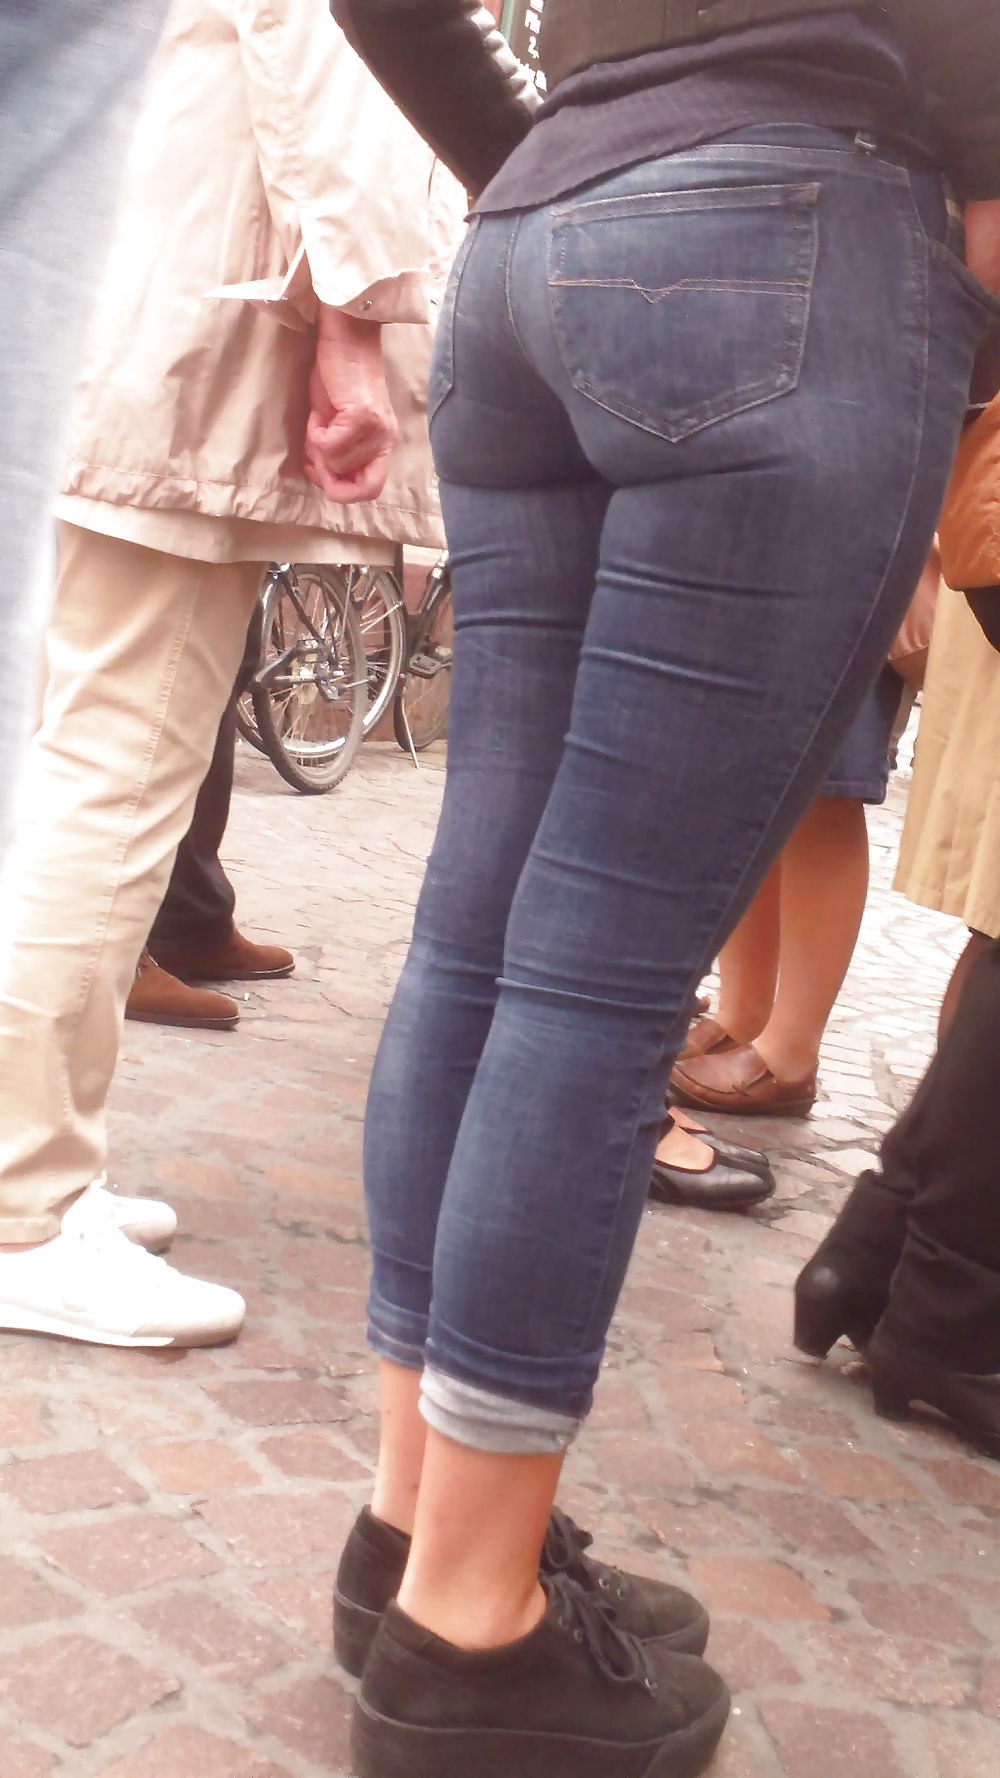 Popular teen girls ass & butt in jeans Part 6 #32010438